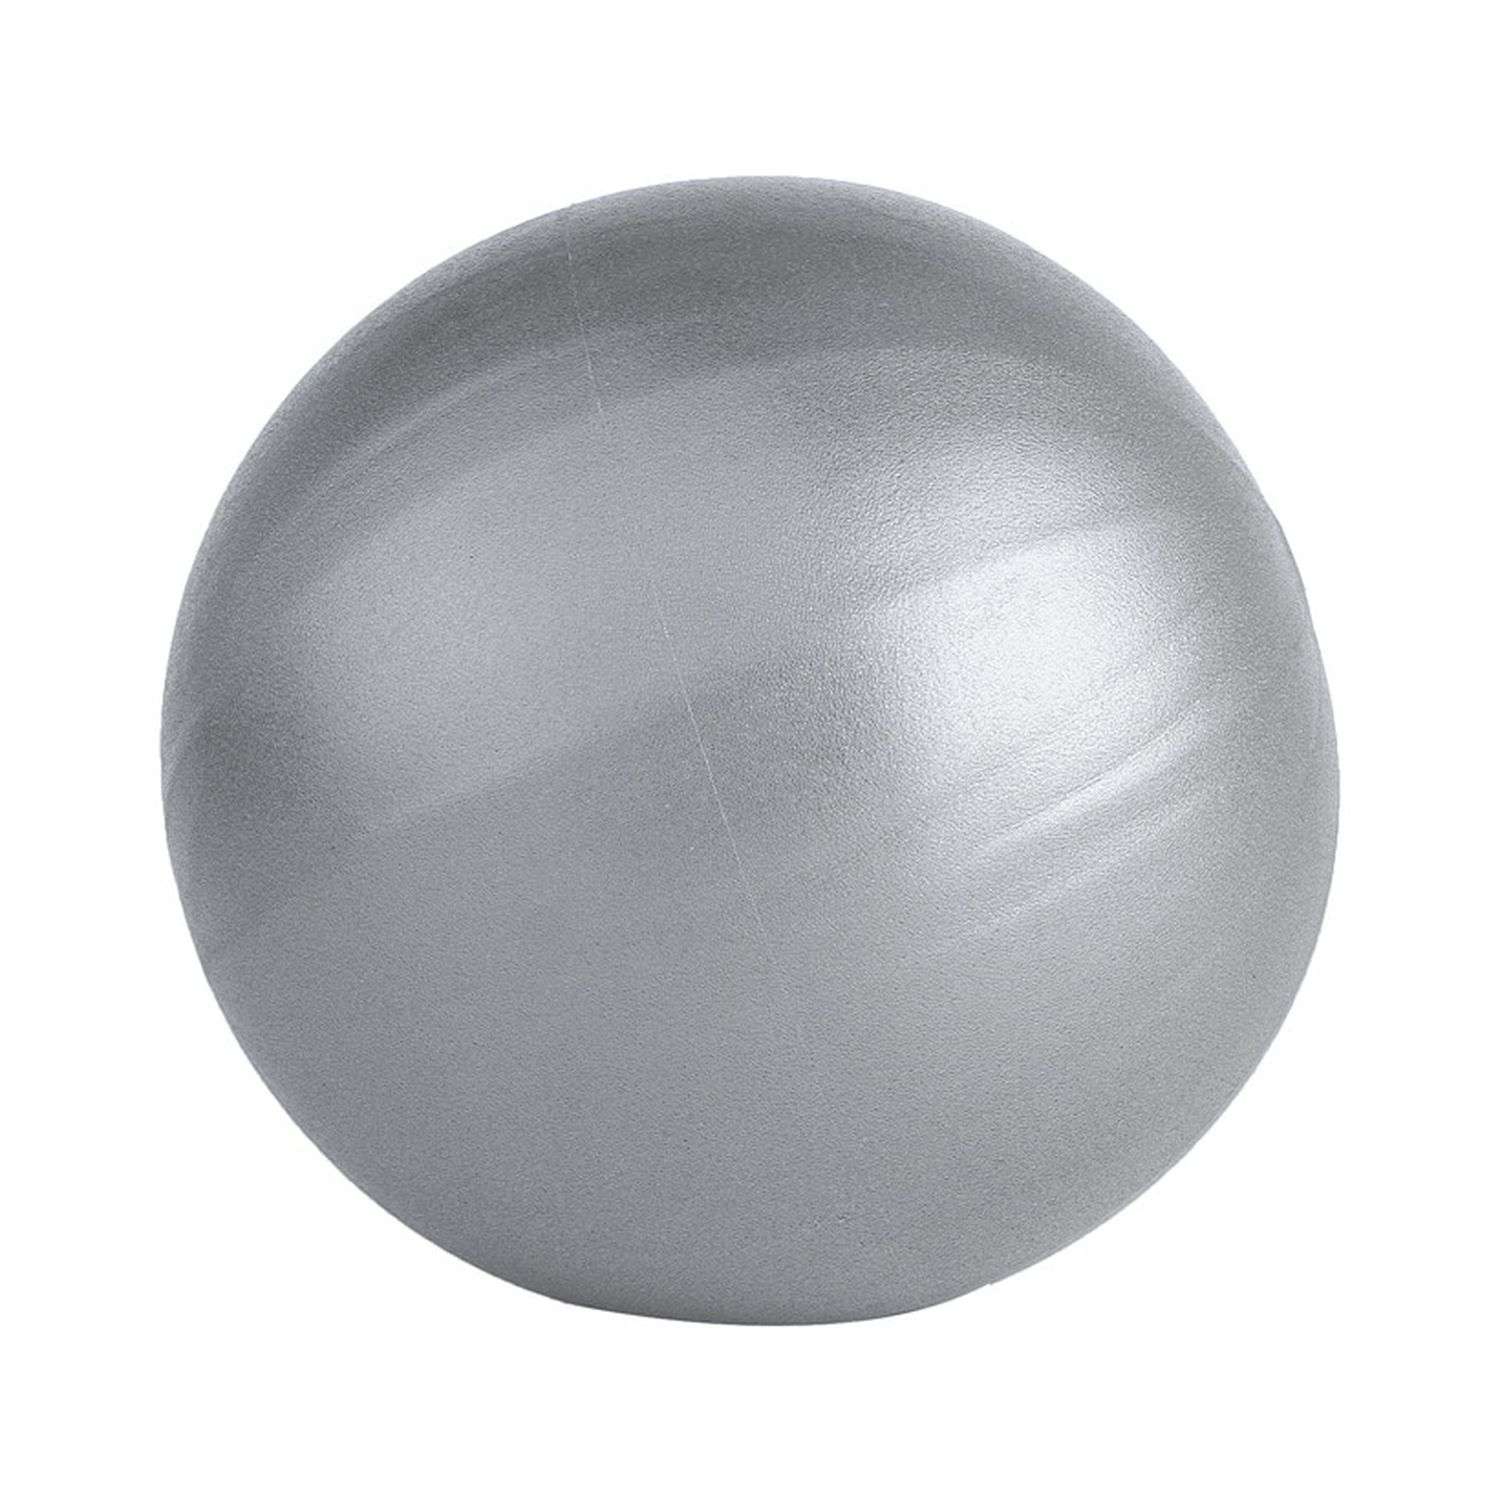 Мяч для йоги и пилатеса Beroma с антивзрывным эффектом 25 см серый - фото 1